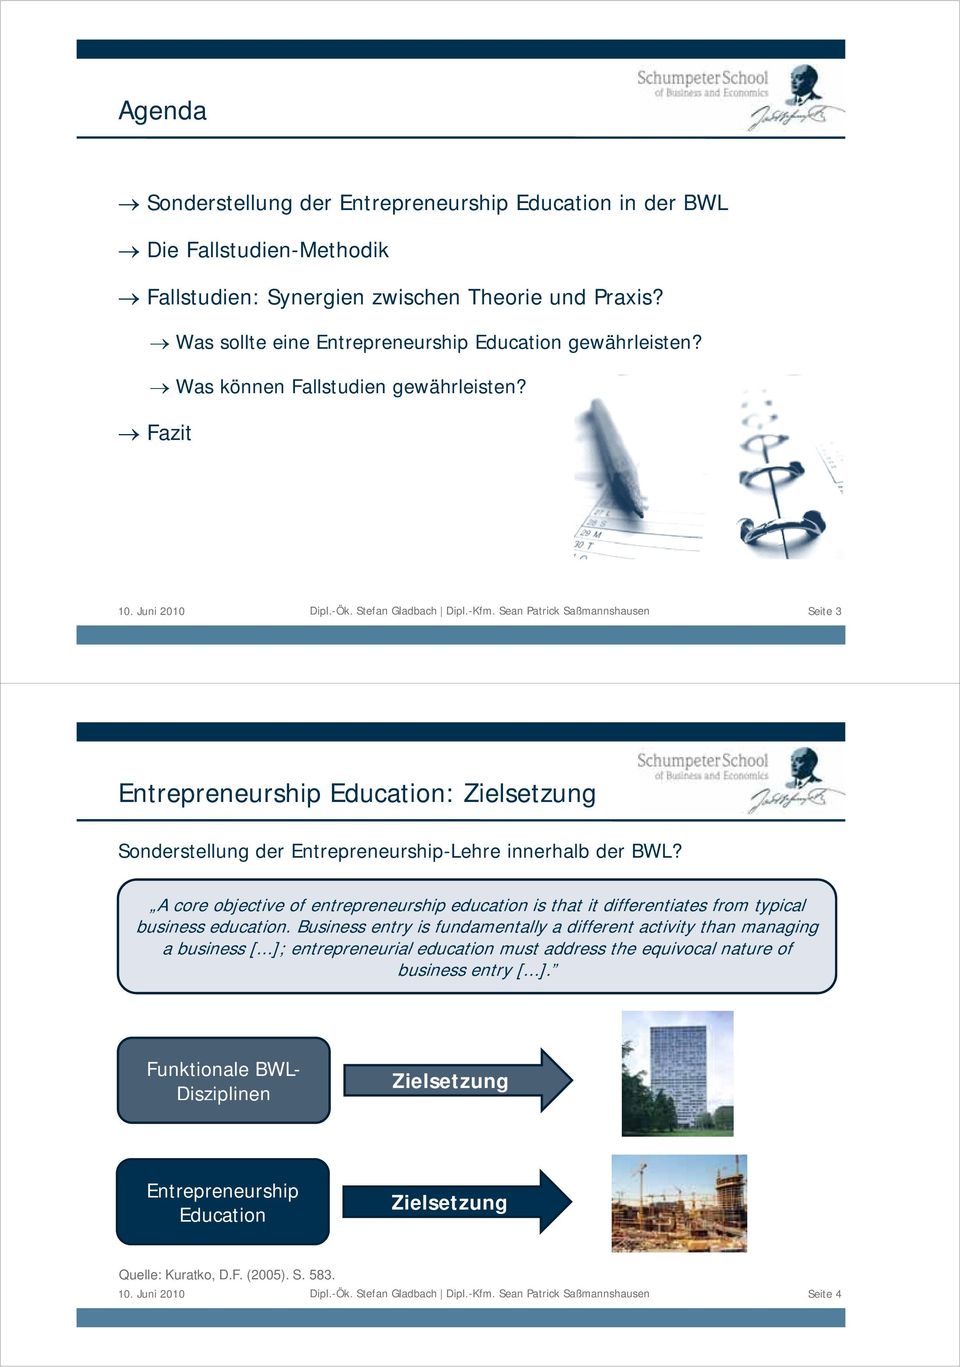 Sean Patrick Saßmannshausen Seite 3 Entrepreneurship Education: Zielsetzung Sonderstellung der Entrepreneurship-Lehre innerhalb der BWL?